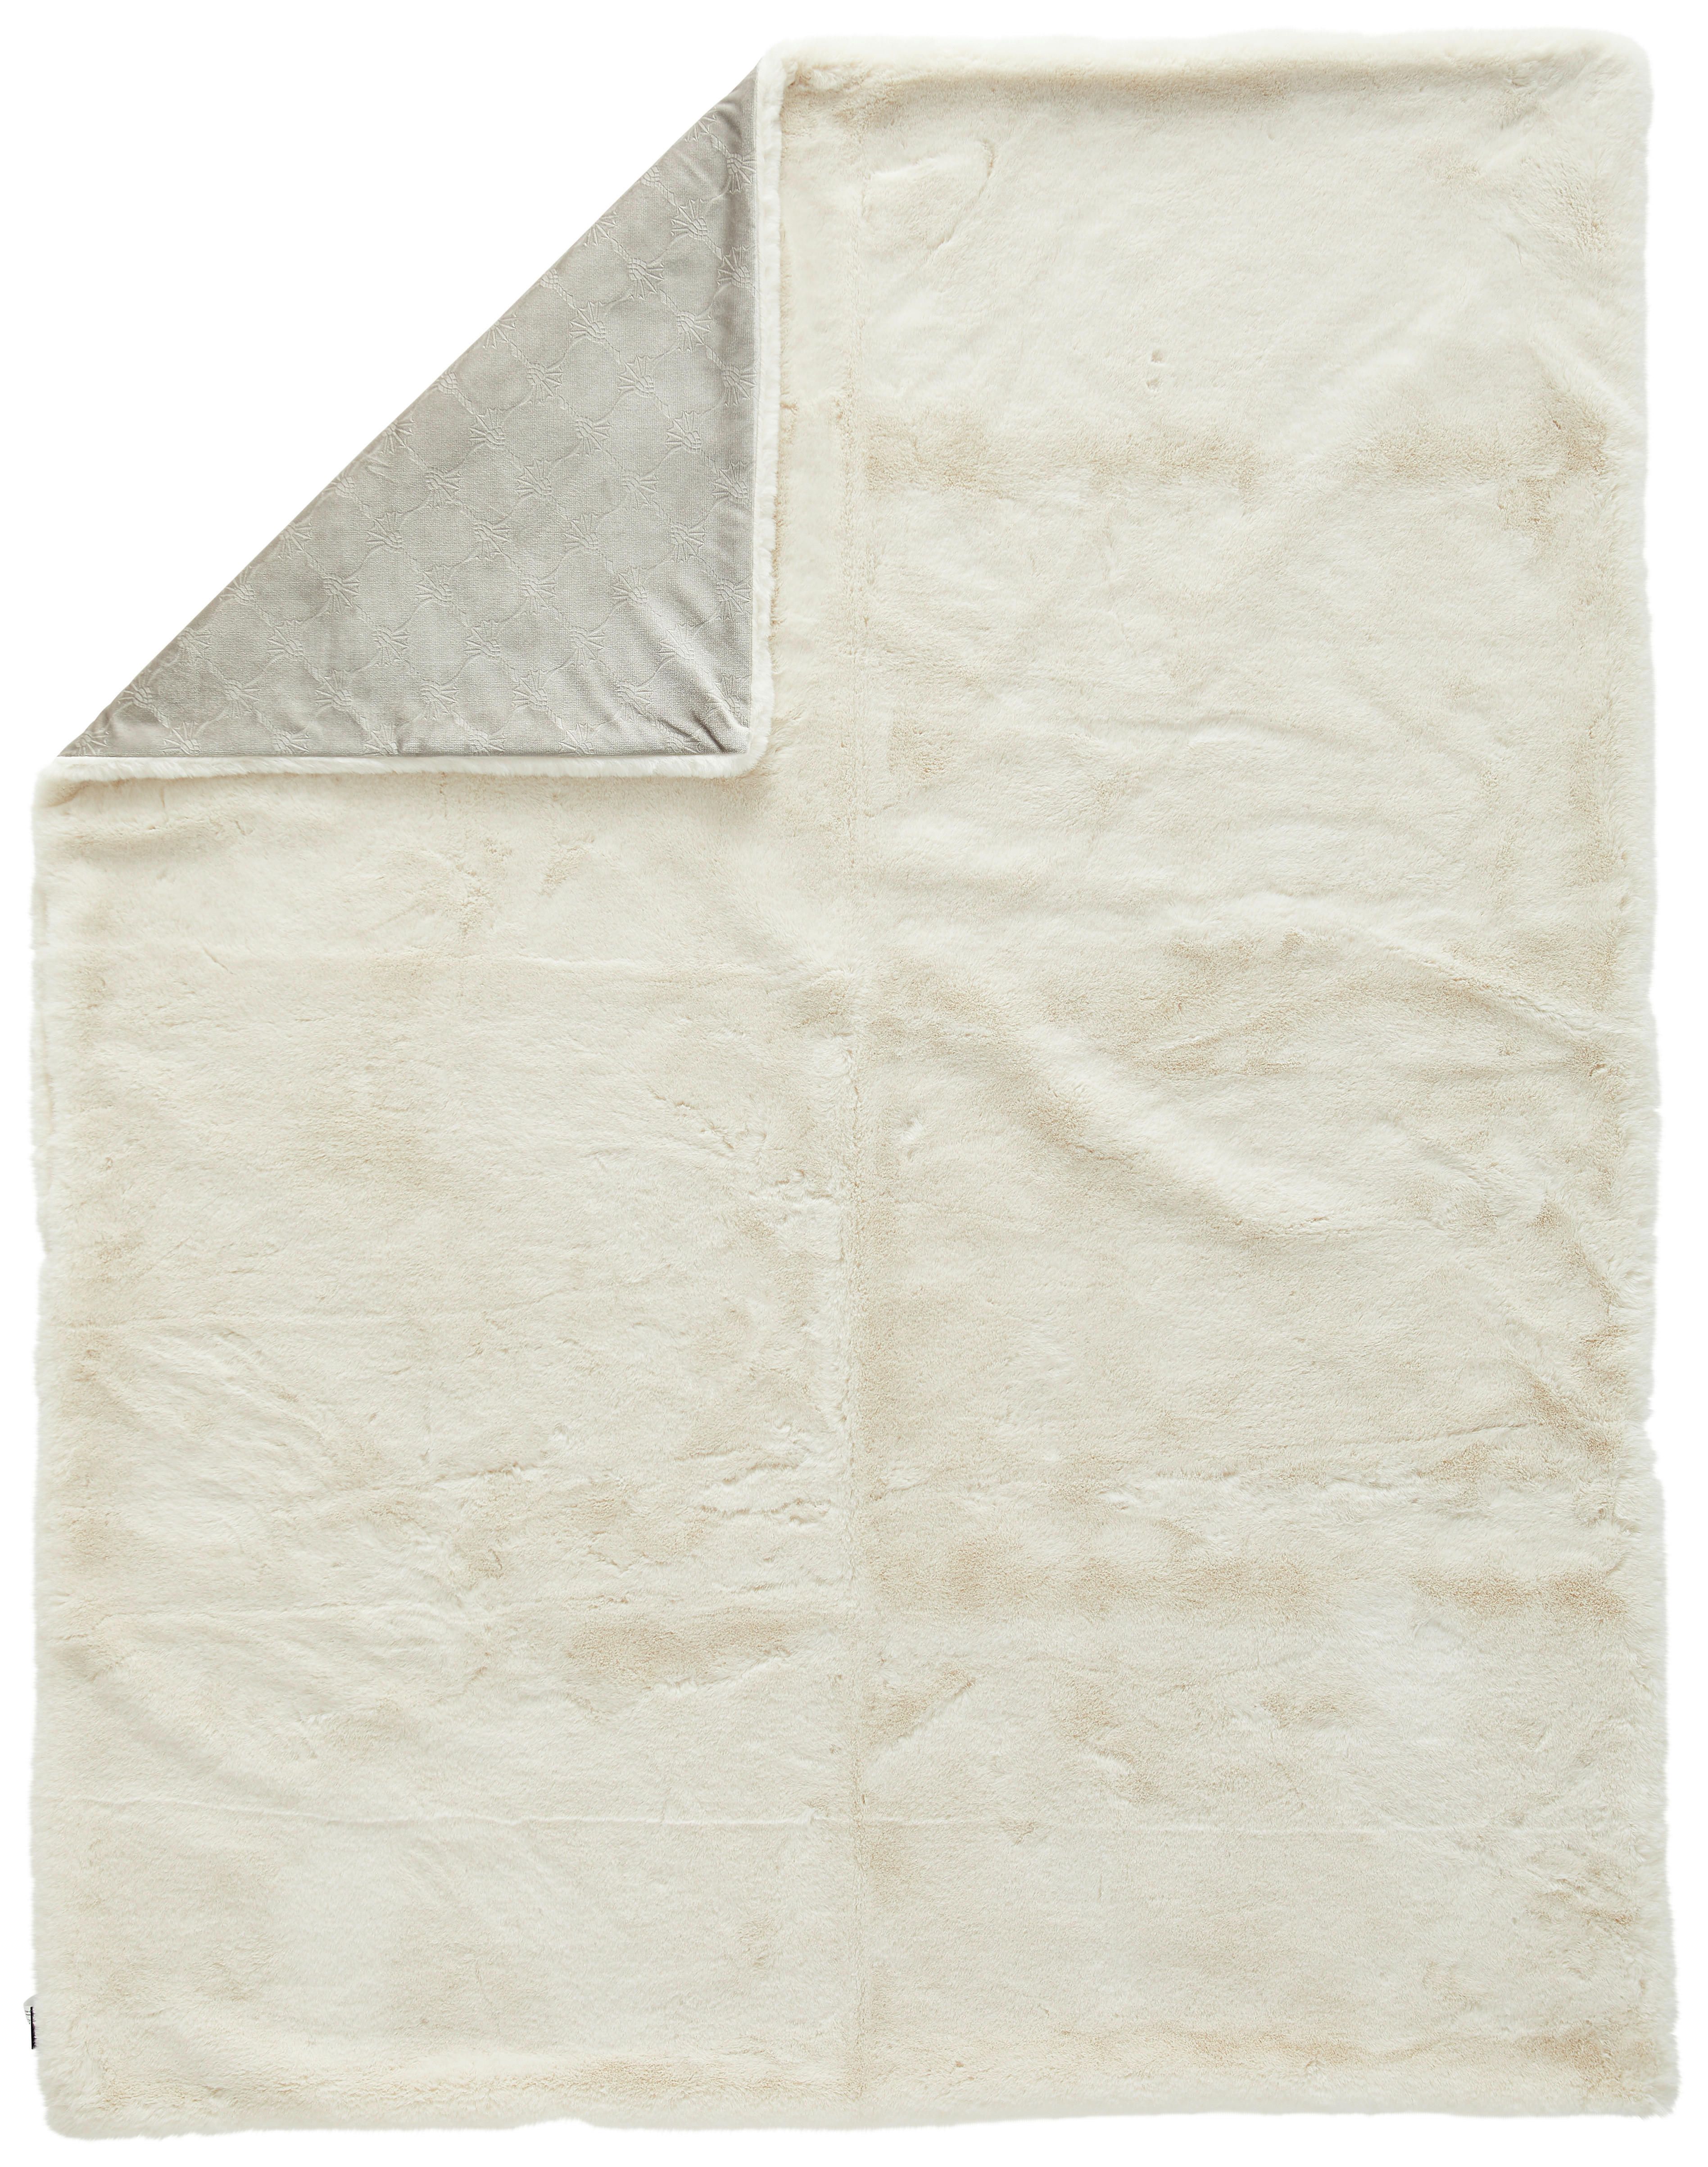 PLAID Smooth 130/170 cm Creme, Weiß  - Creme/Weiß, Design, Textil (130/170cm) - Joop!